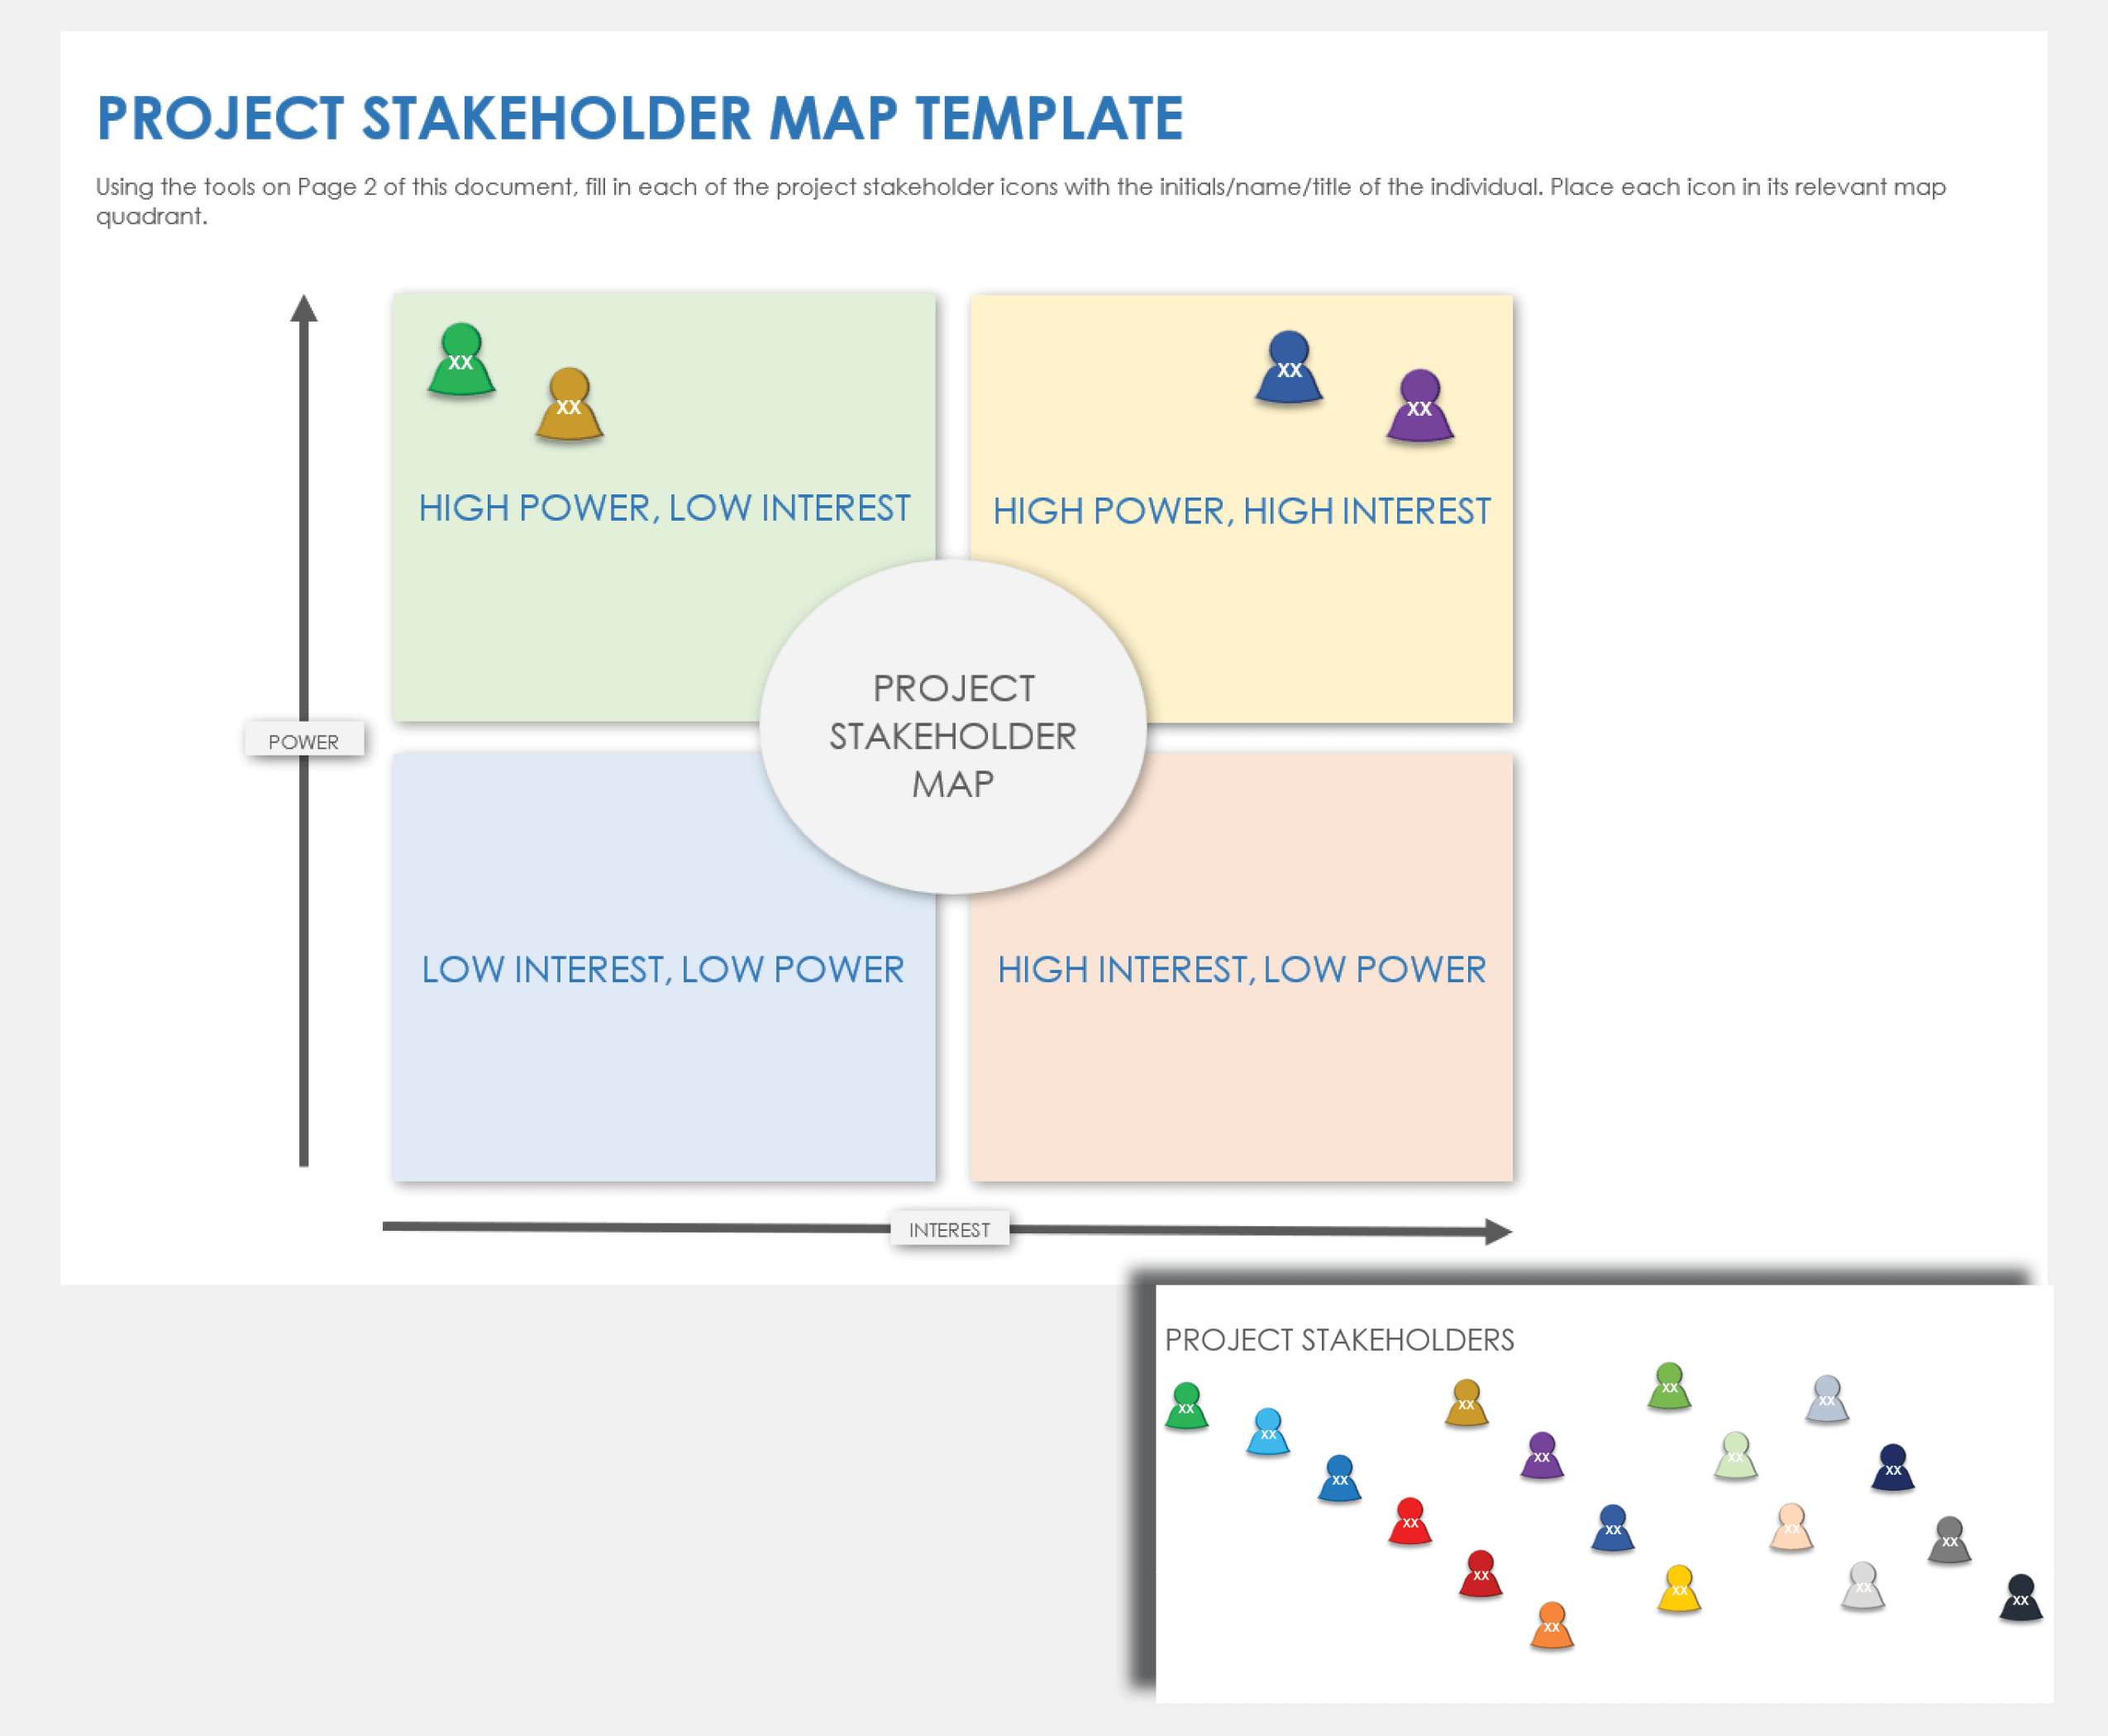 Free Stakeholder Mapping Templates Smartsheet